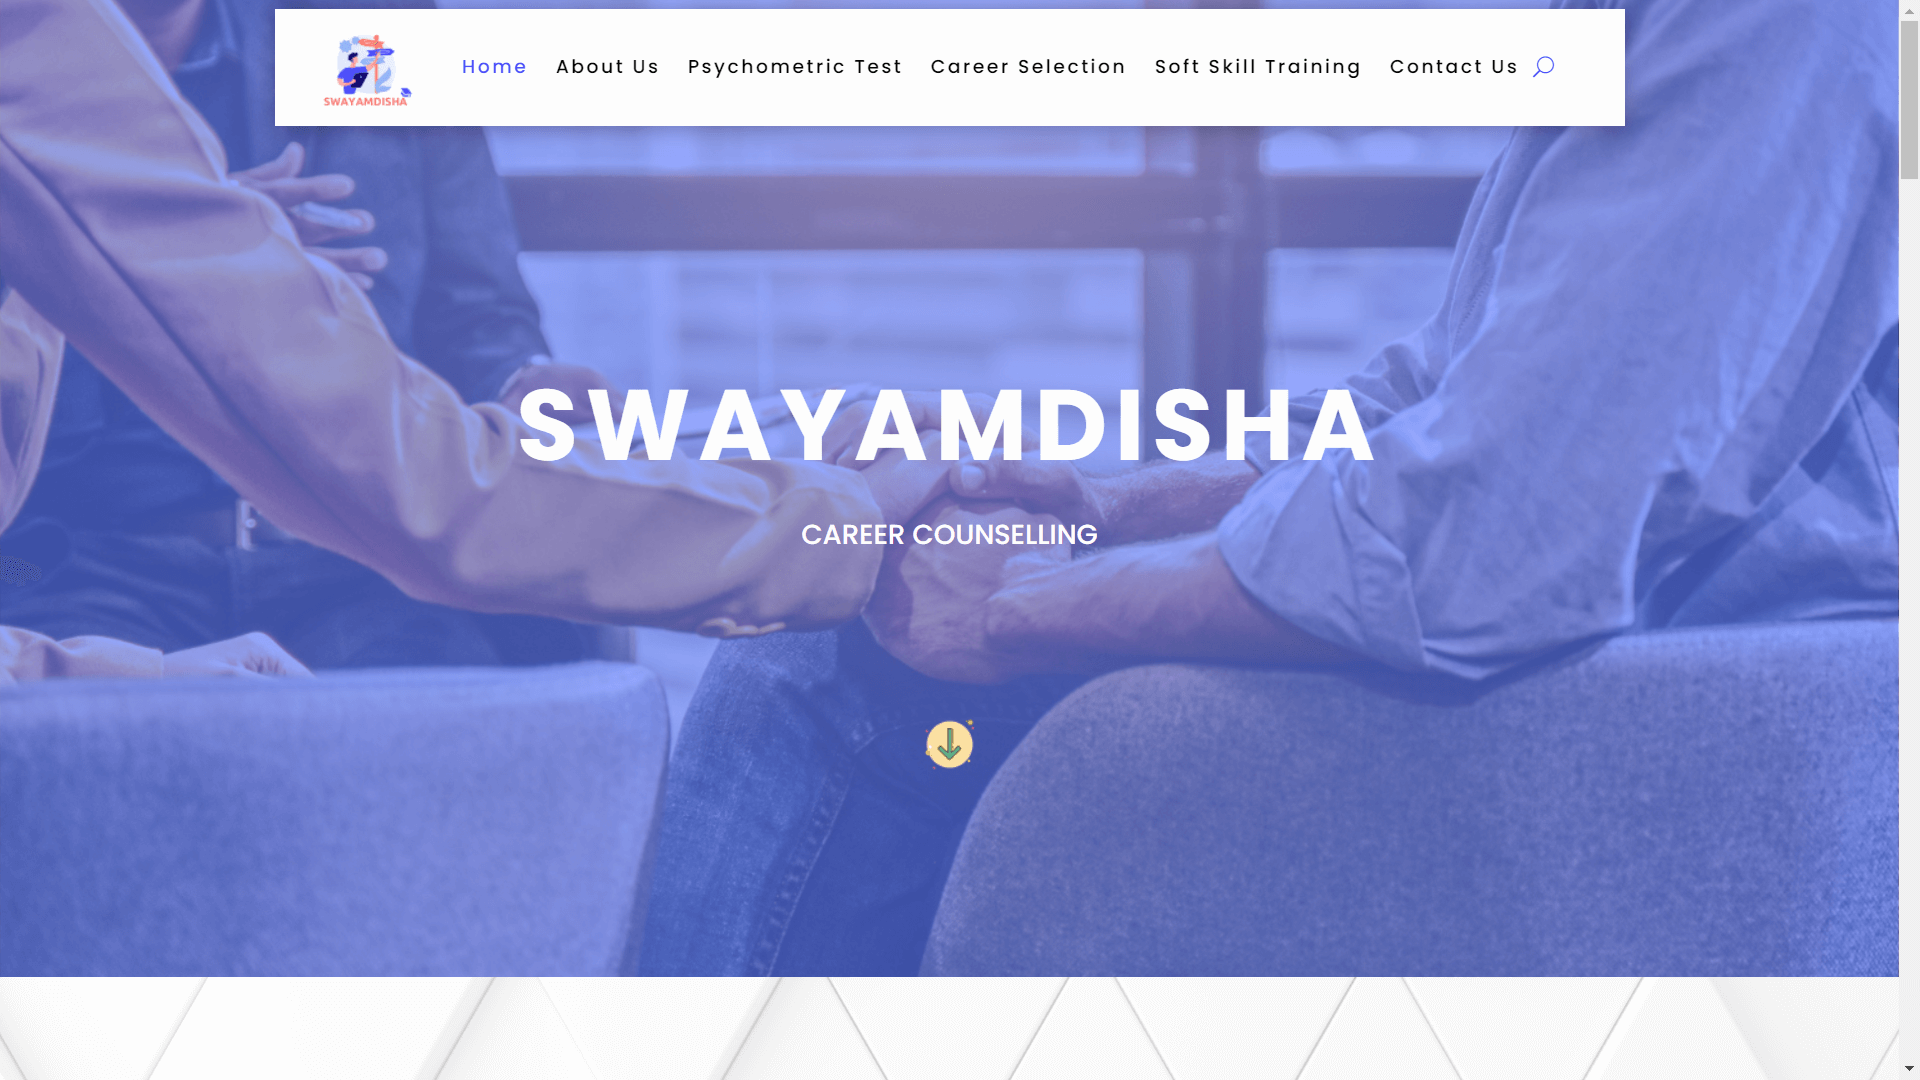 SwayamDisha HeroSection